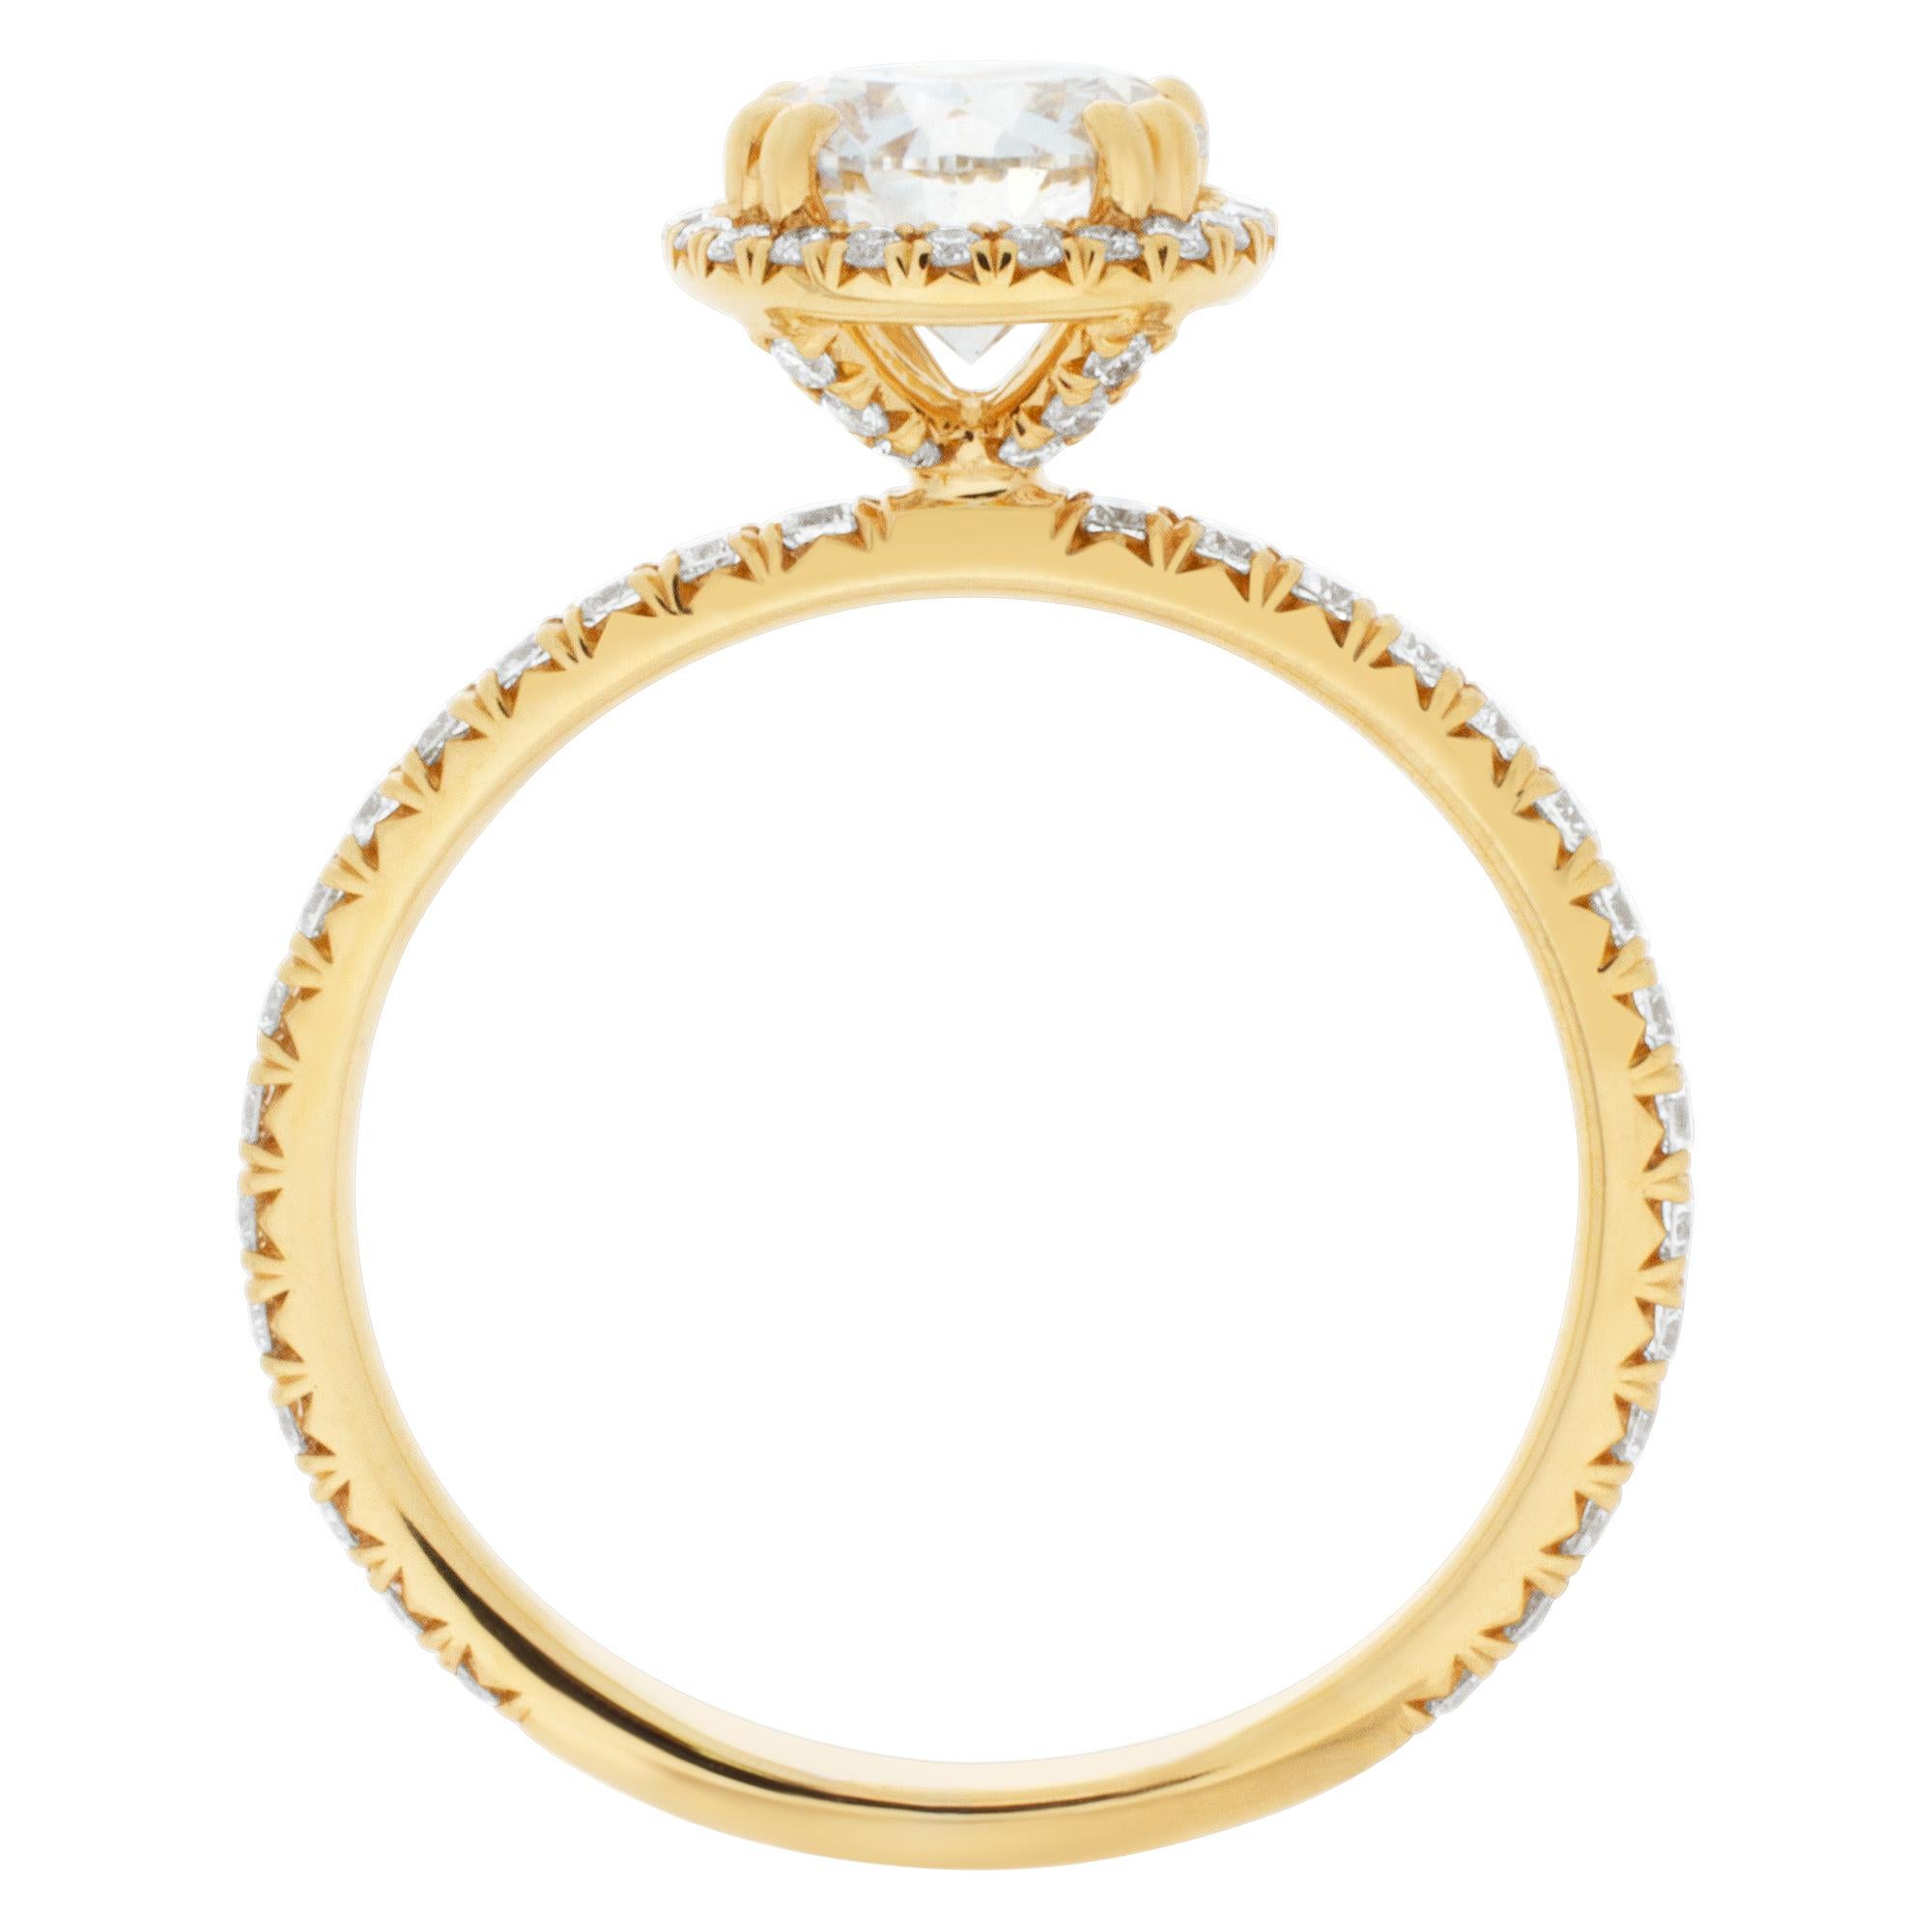 Bague de fiançailles en or 18 carats avec diamant certifié par le GIA (couleur F, pureté VS1, coupe excellente, polissage excellent, symétrie excellente).

Taille 6.5